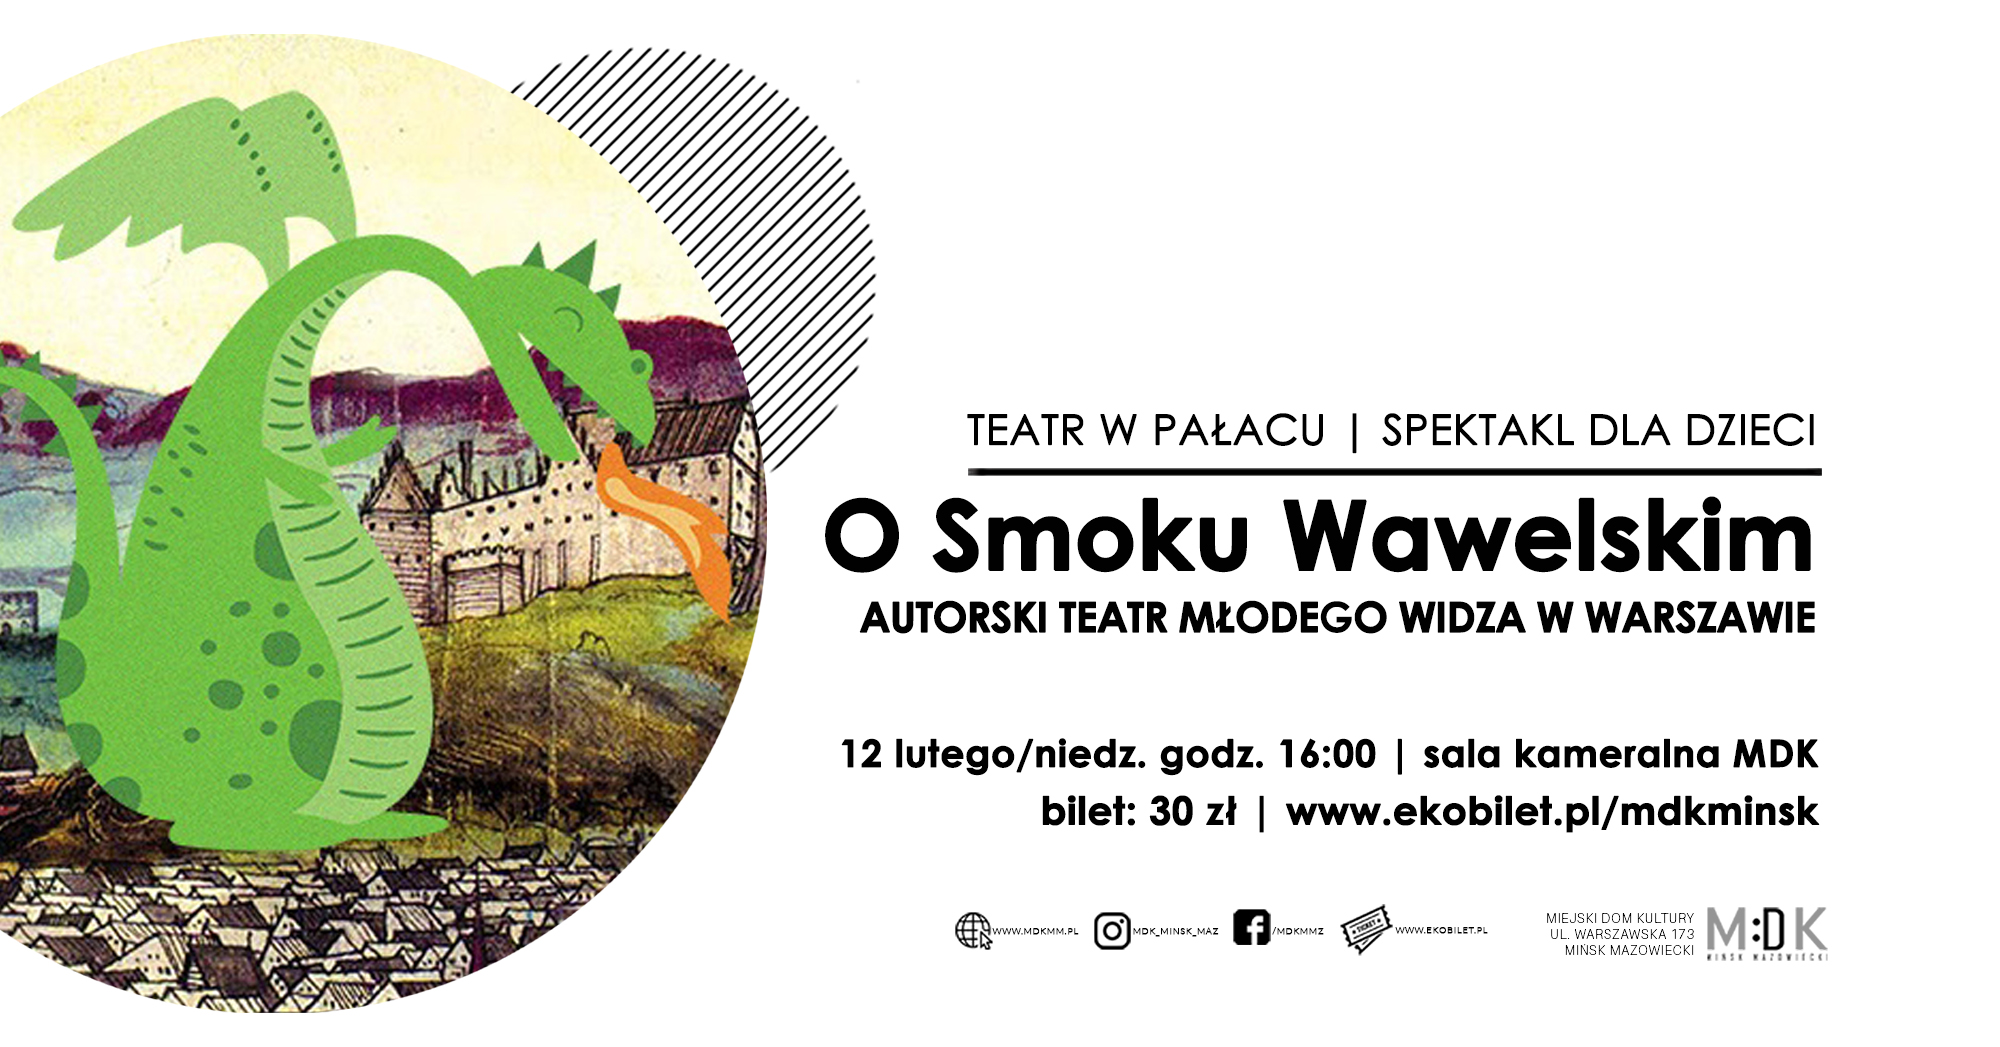 O Smoku Wawelskim | Teatr w Pałacu | spektakl dla dzieci